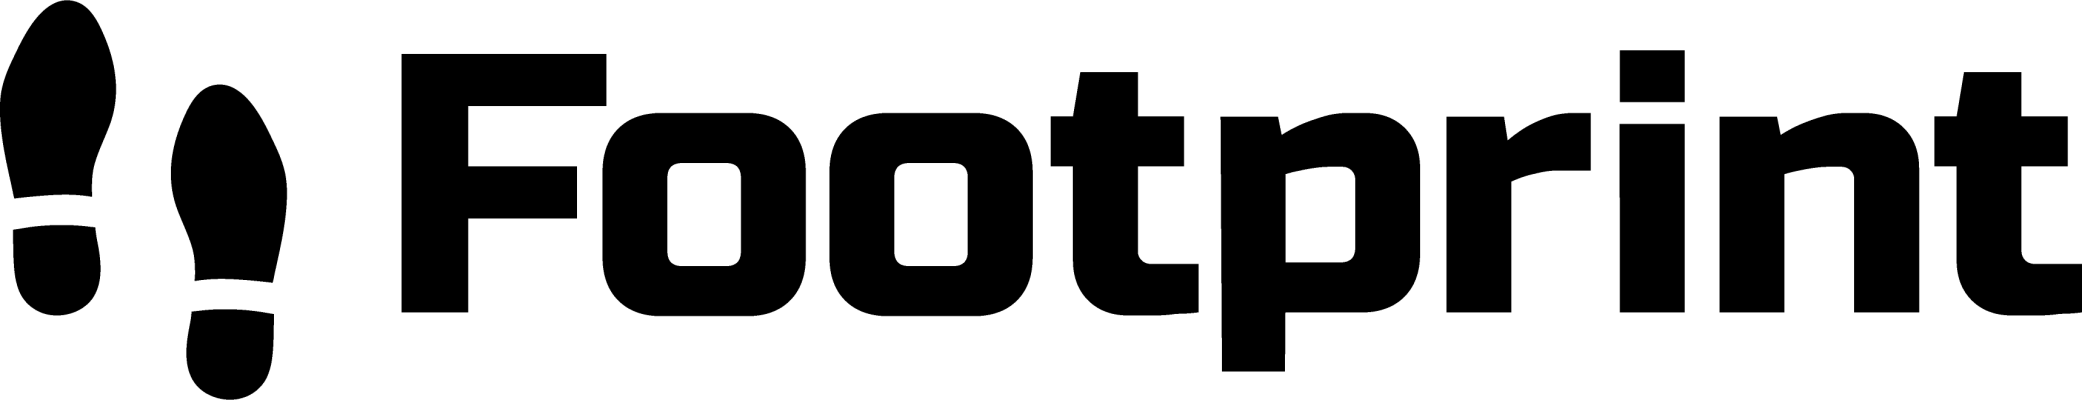 Logo-Footprint-zwart-zonder-tekst.png